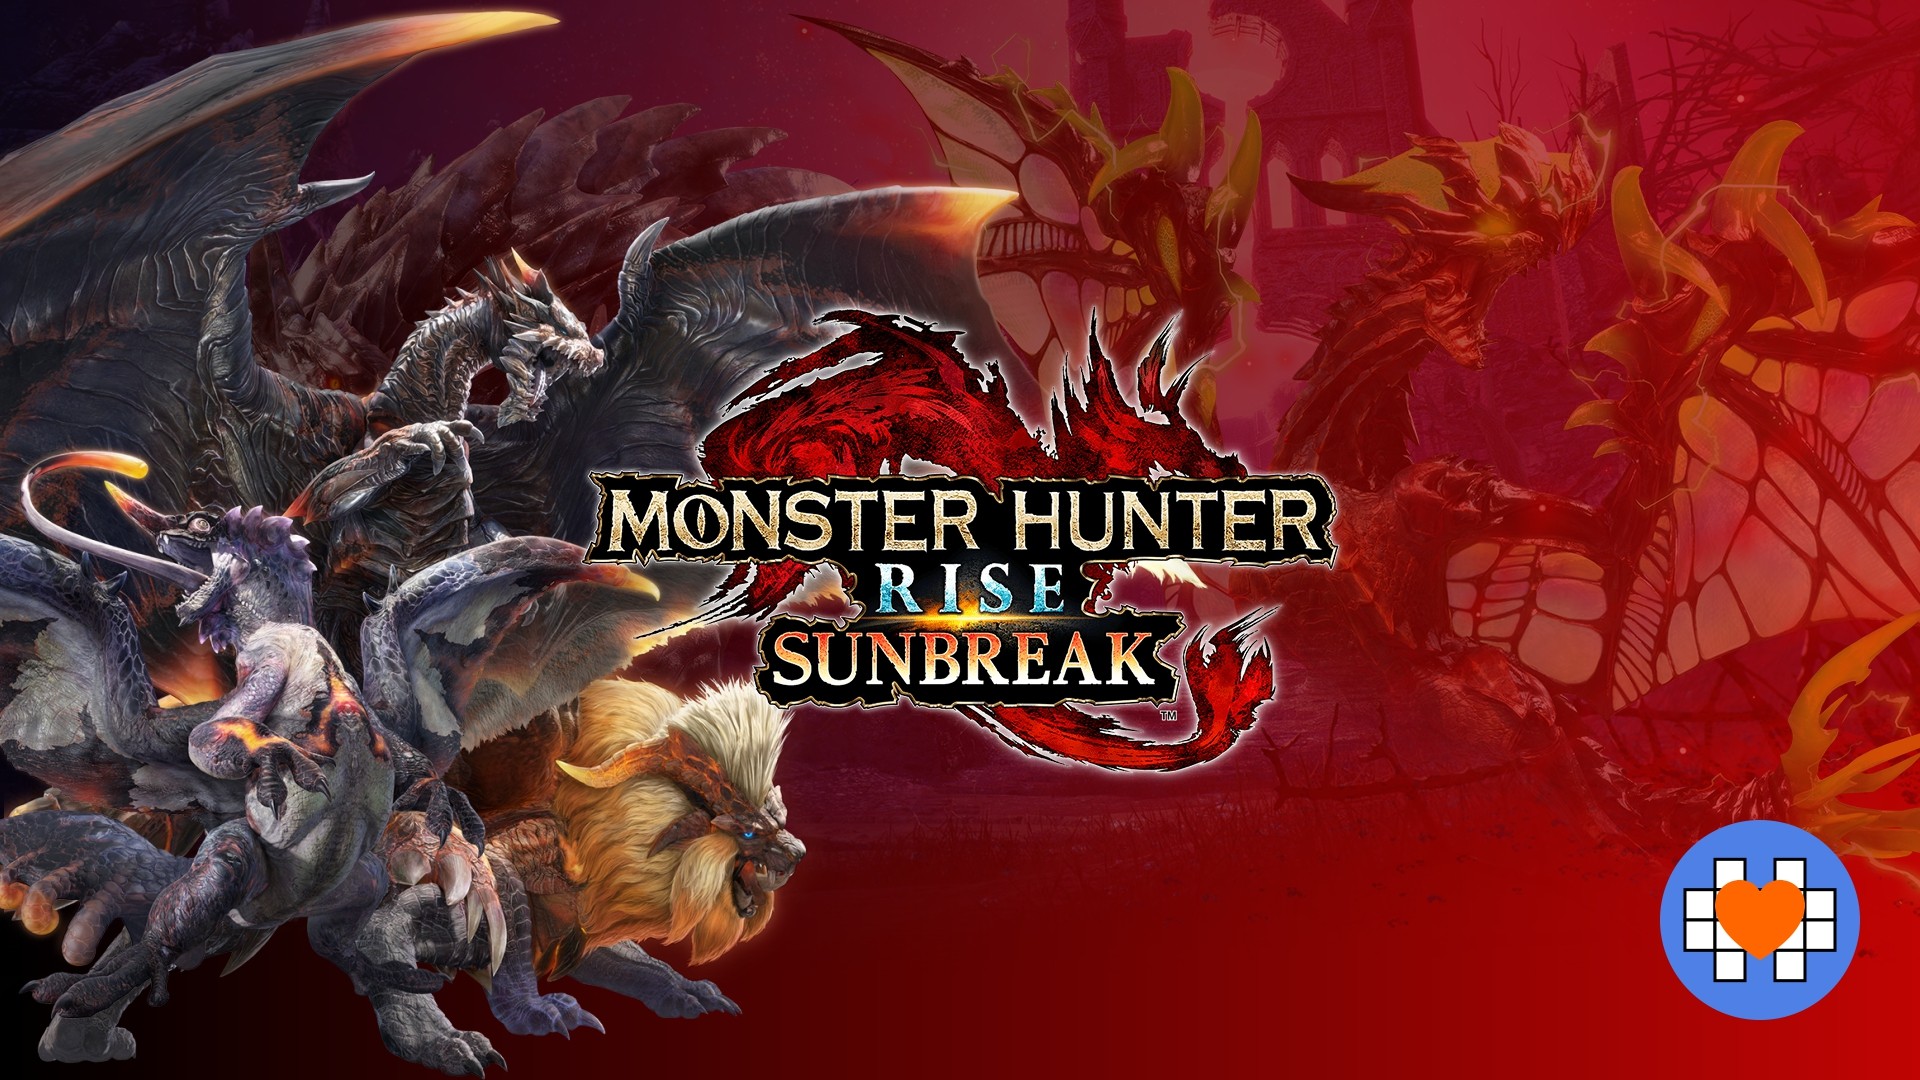 Mais informações sobre o jogo  Monster Hunter Rise: Sunbreak Manual Online  Oficial